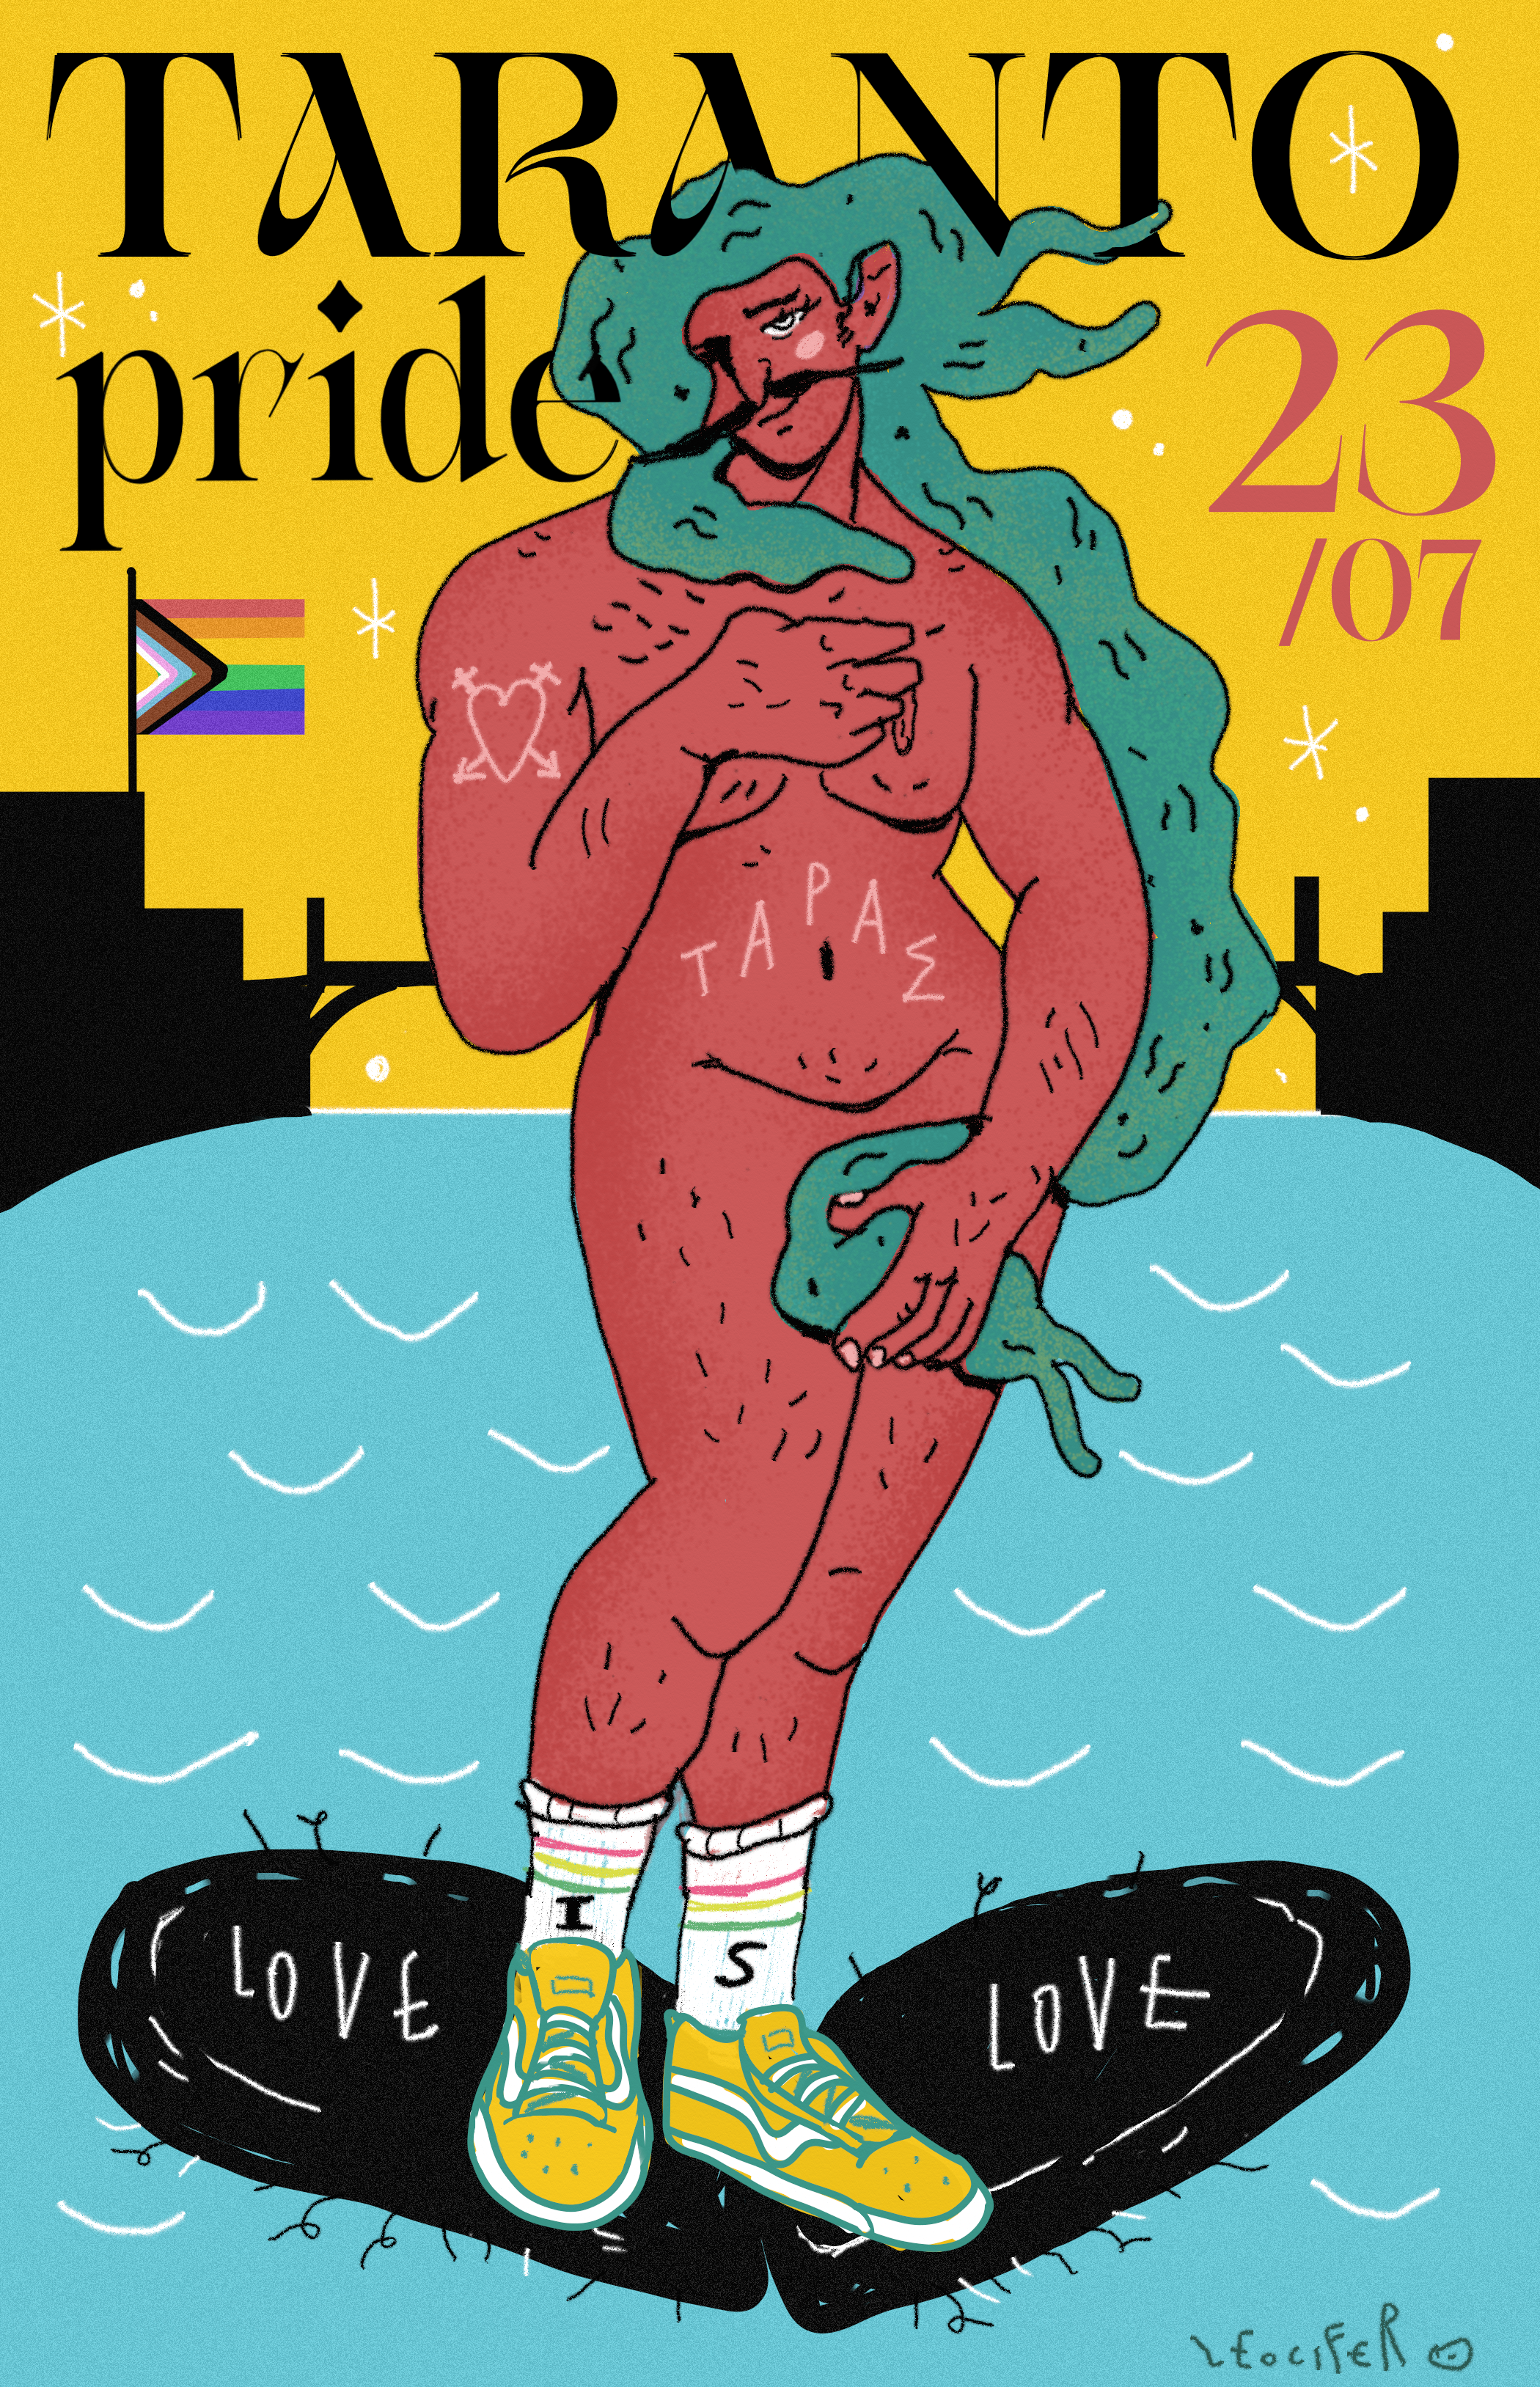 È iniziato il countdown del Taranto Pride, la cui parata attraversa la città di Taranto sabato 23 luglio